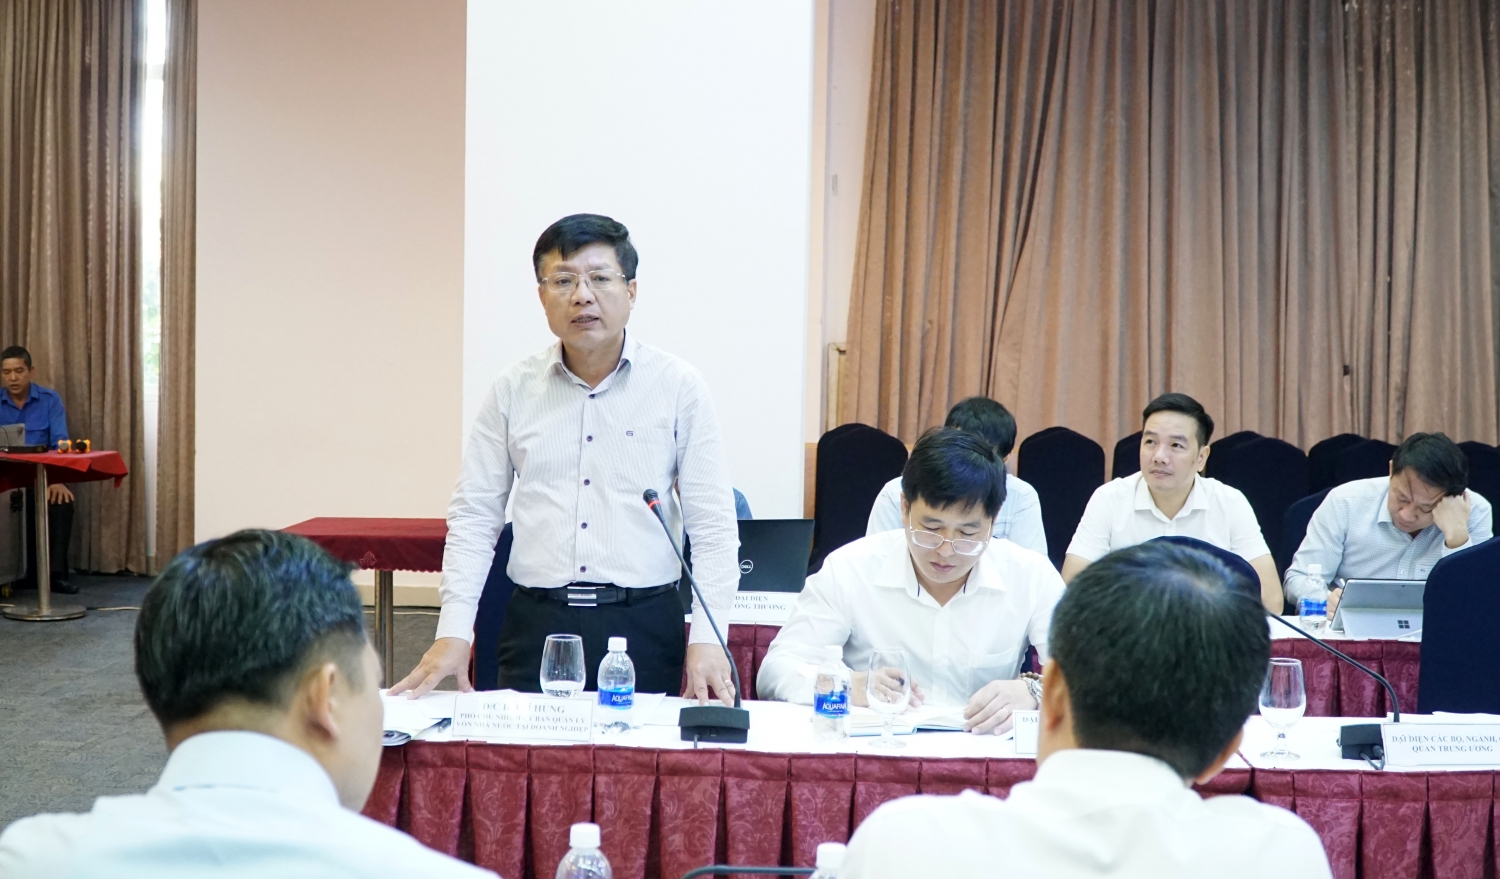 Đồng chí Hồ Sỹ Hùng - Phó Chủ tịch Ủy ban Quản lý vốn nhà nước tại Doanh nghiệp nêu ý kiến